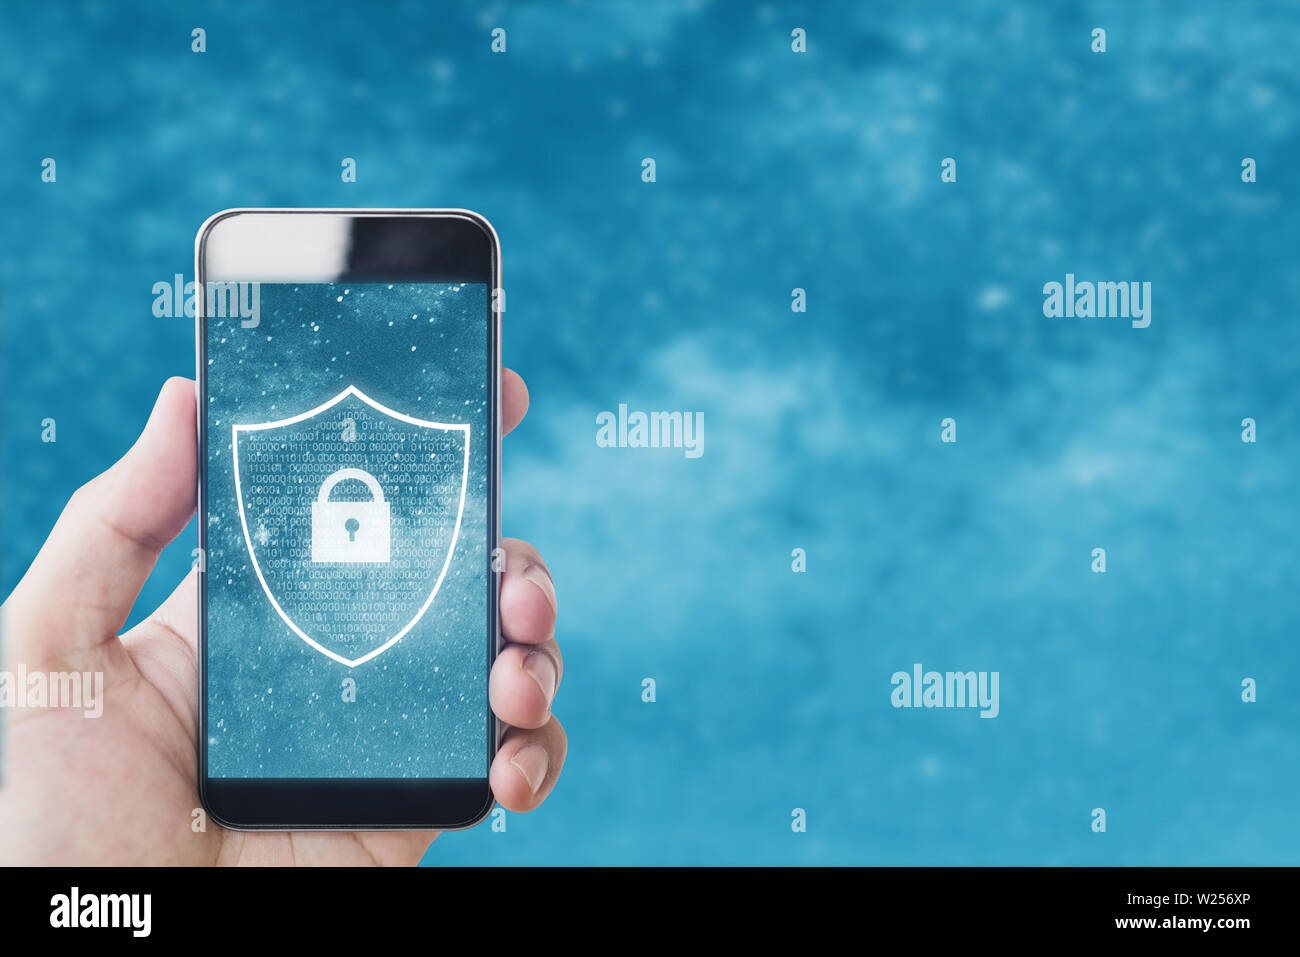 Handy und Internet Sicherheit online Sicherheit System. Hand mit smart phone mit Sperrsymbol auf dem Display Stockfoto